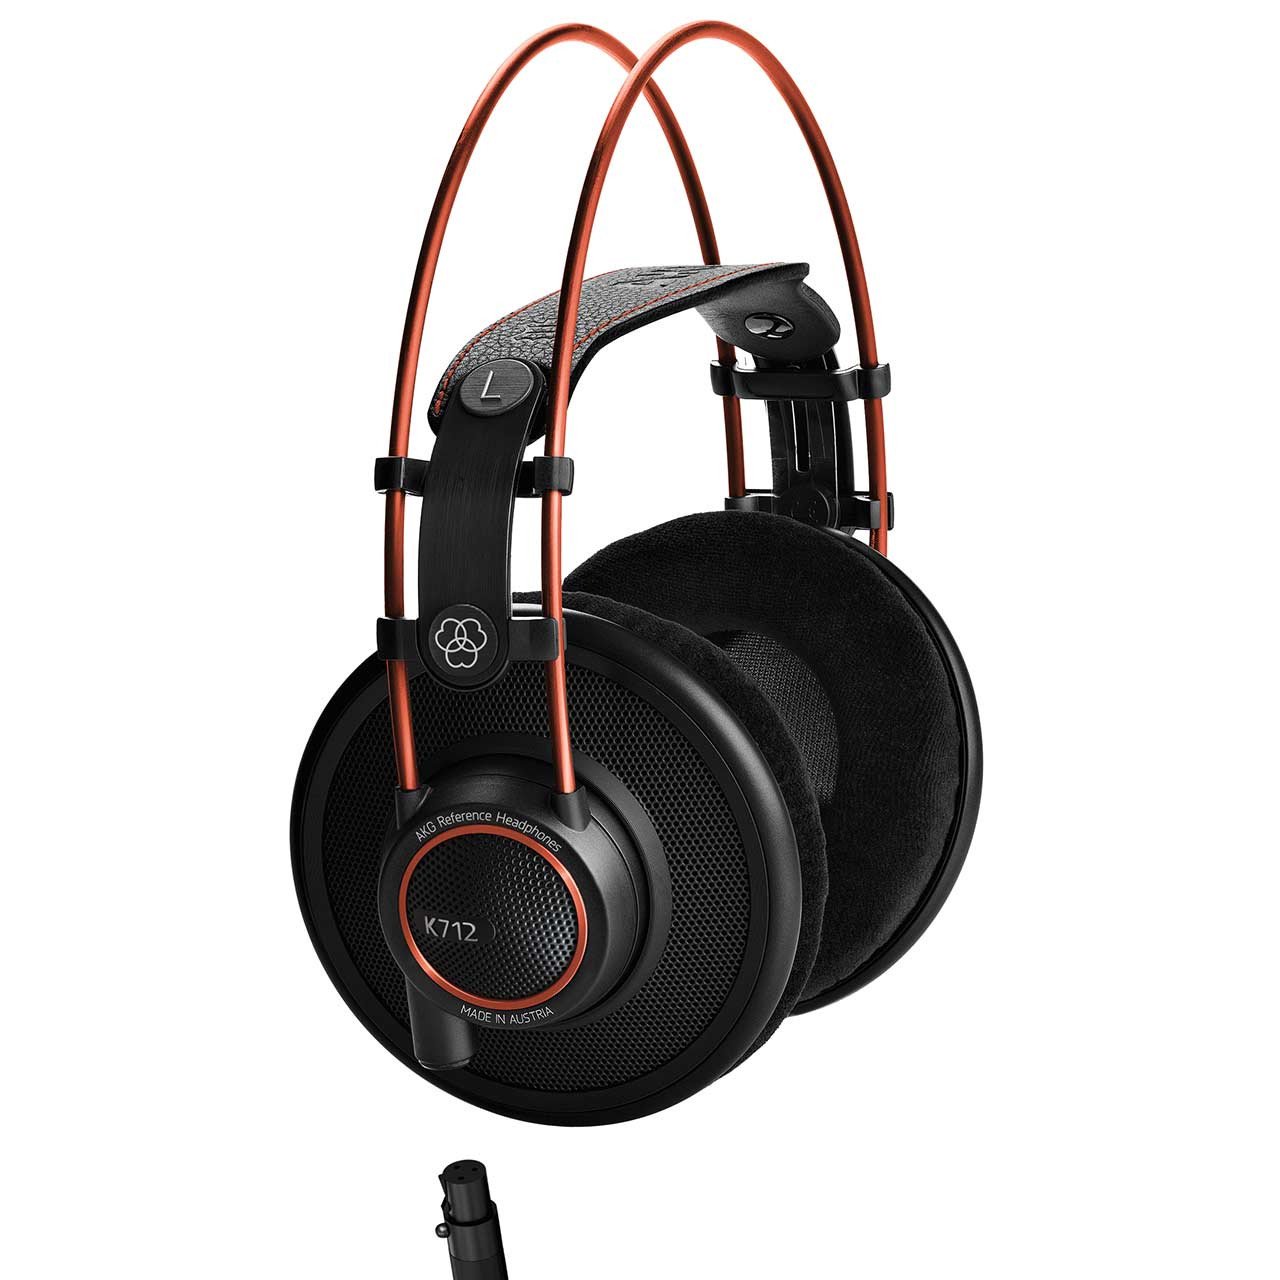 Open Headphones - AKG K712 PRO Professional Reference Open Over-Ear Studio Headphones